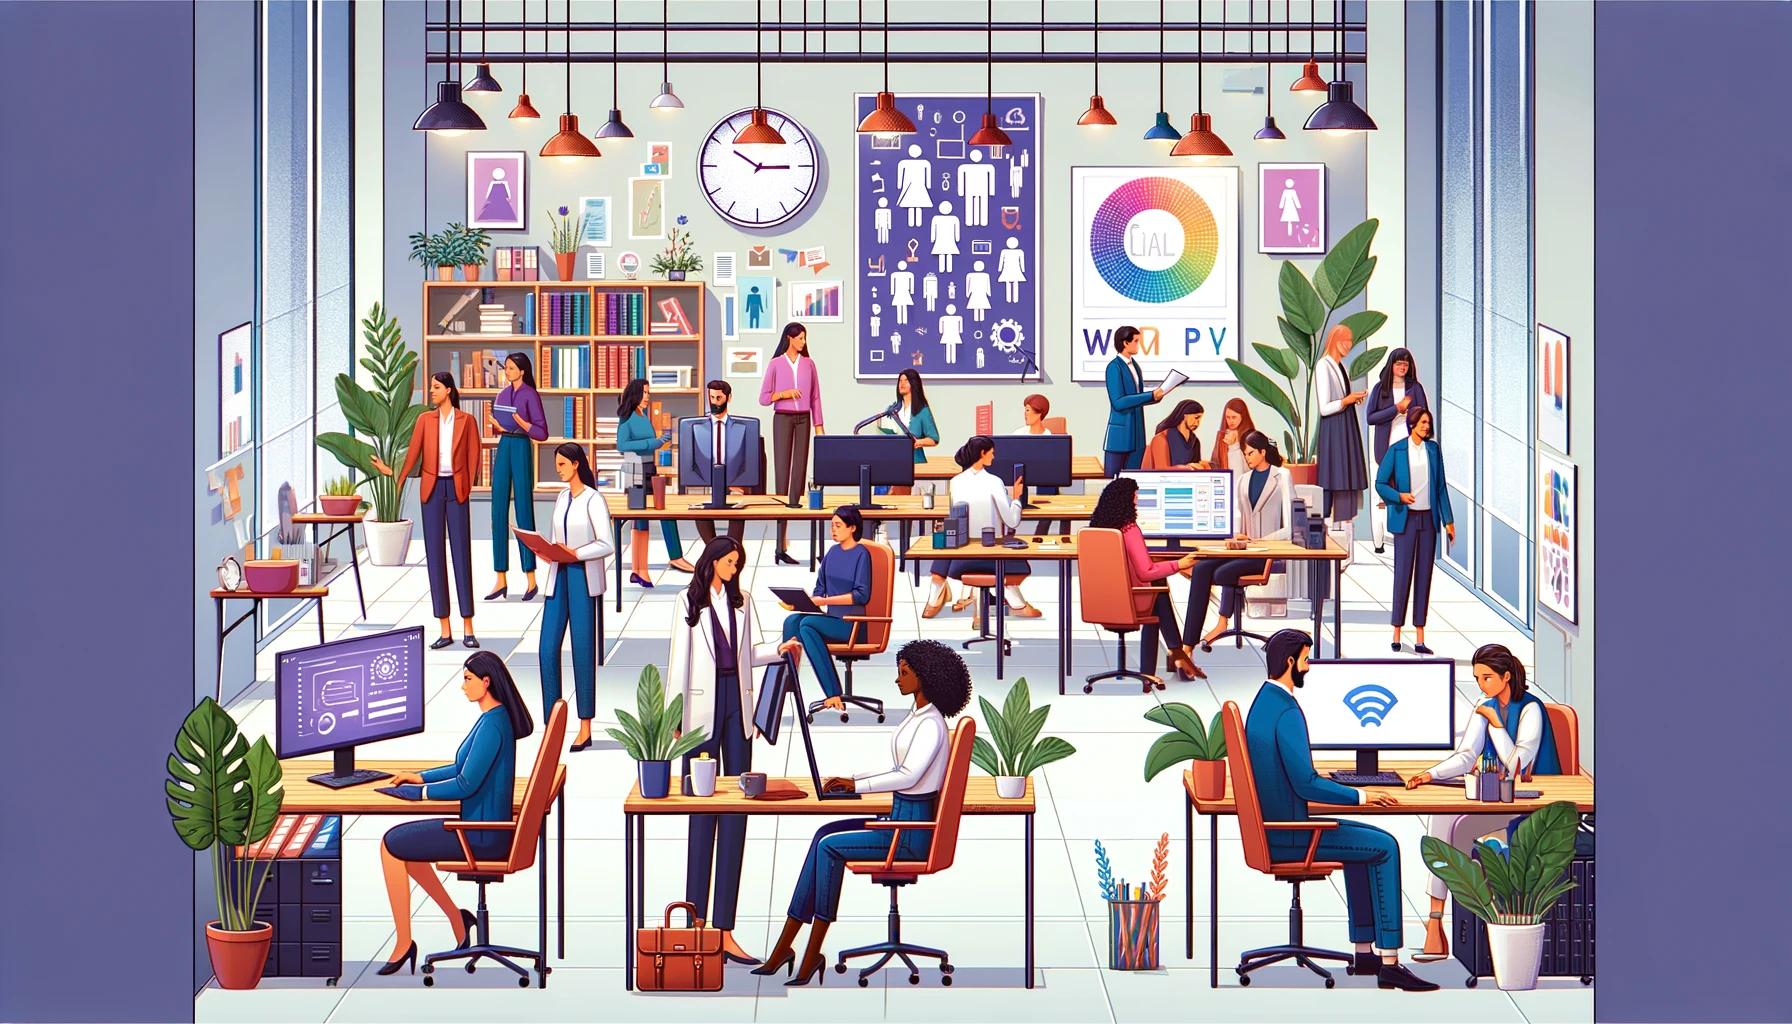 Imagen de una oficina moderna y diversa con personal trabajando en los registros REGCON. Juntos en un ambiente colaborativo y equitativo, simbolizan la igualdad de género y la prevención del acoso laboral.